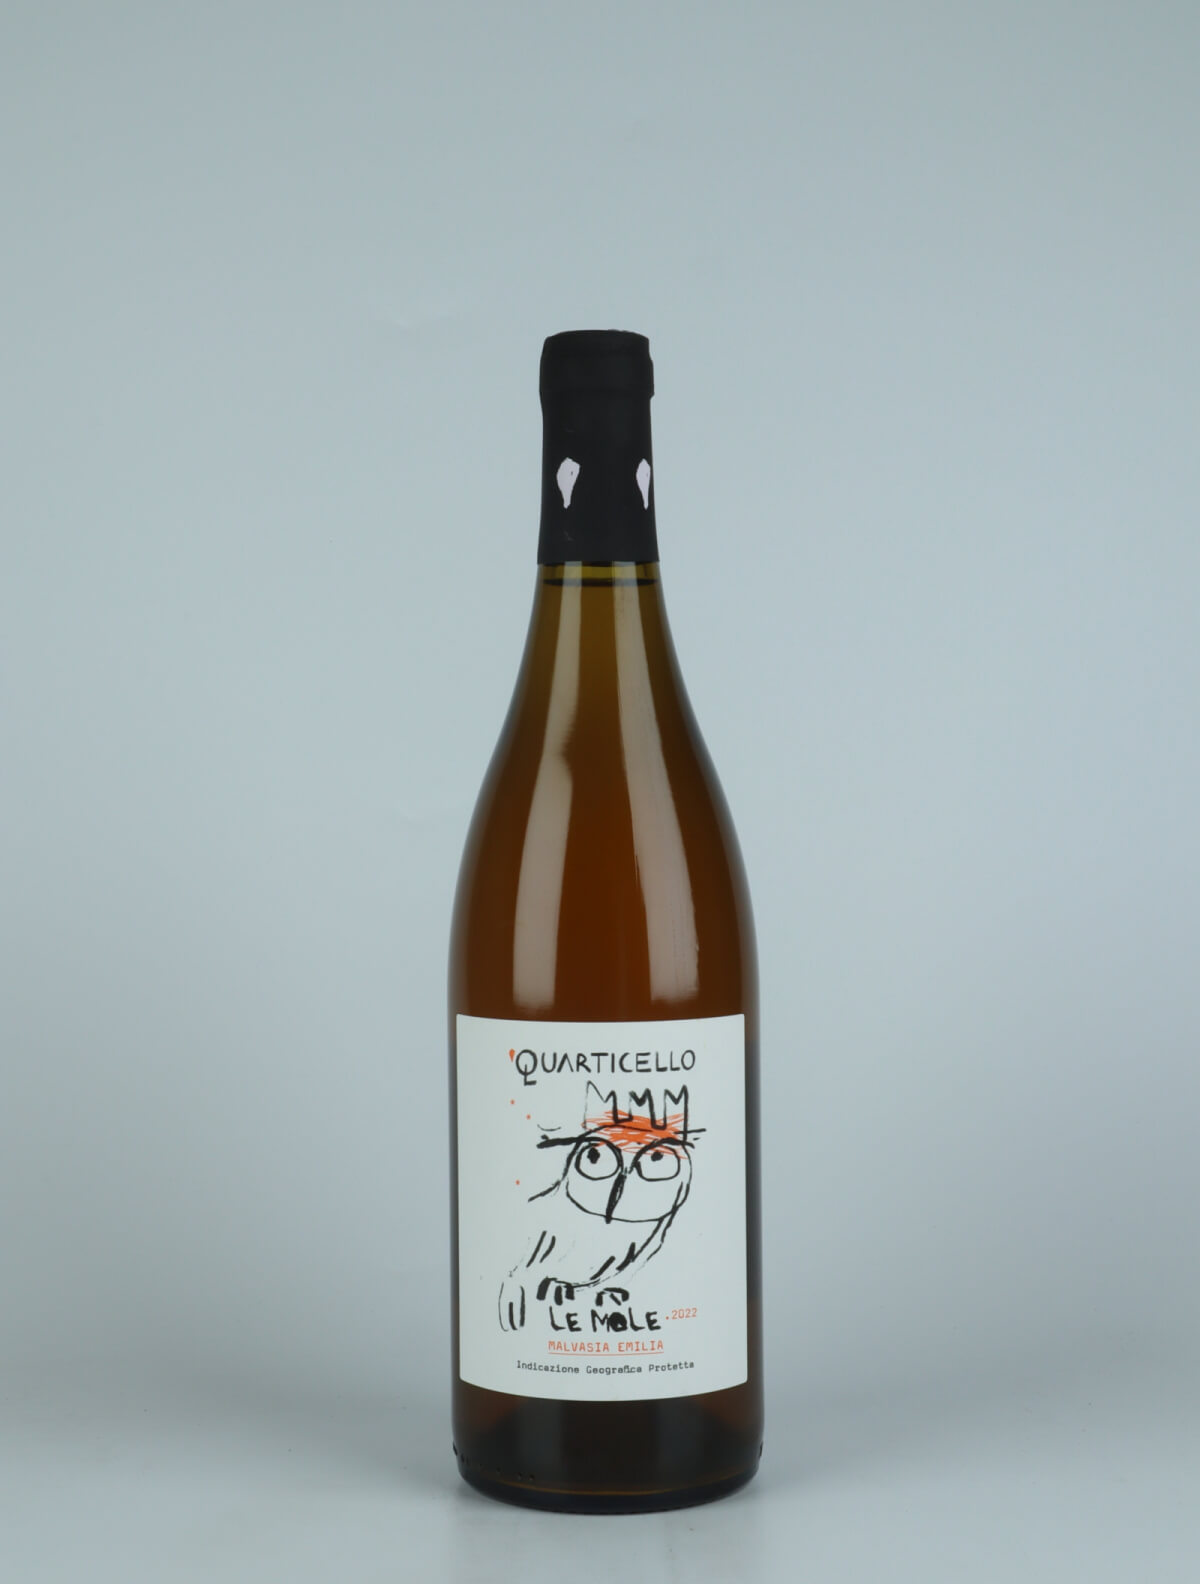 A bottle 2022 Le Mole Orange wine from Quarticello, Emilia-Romagna in Italy